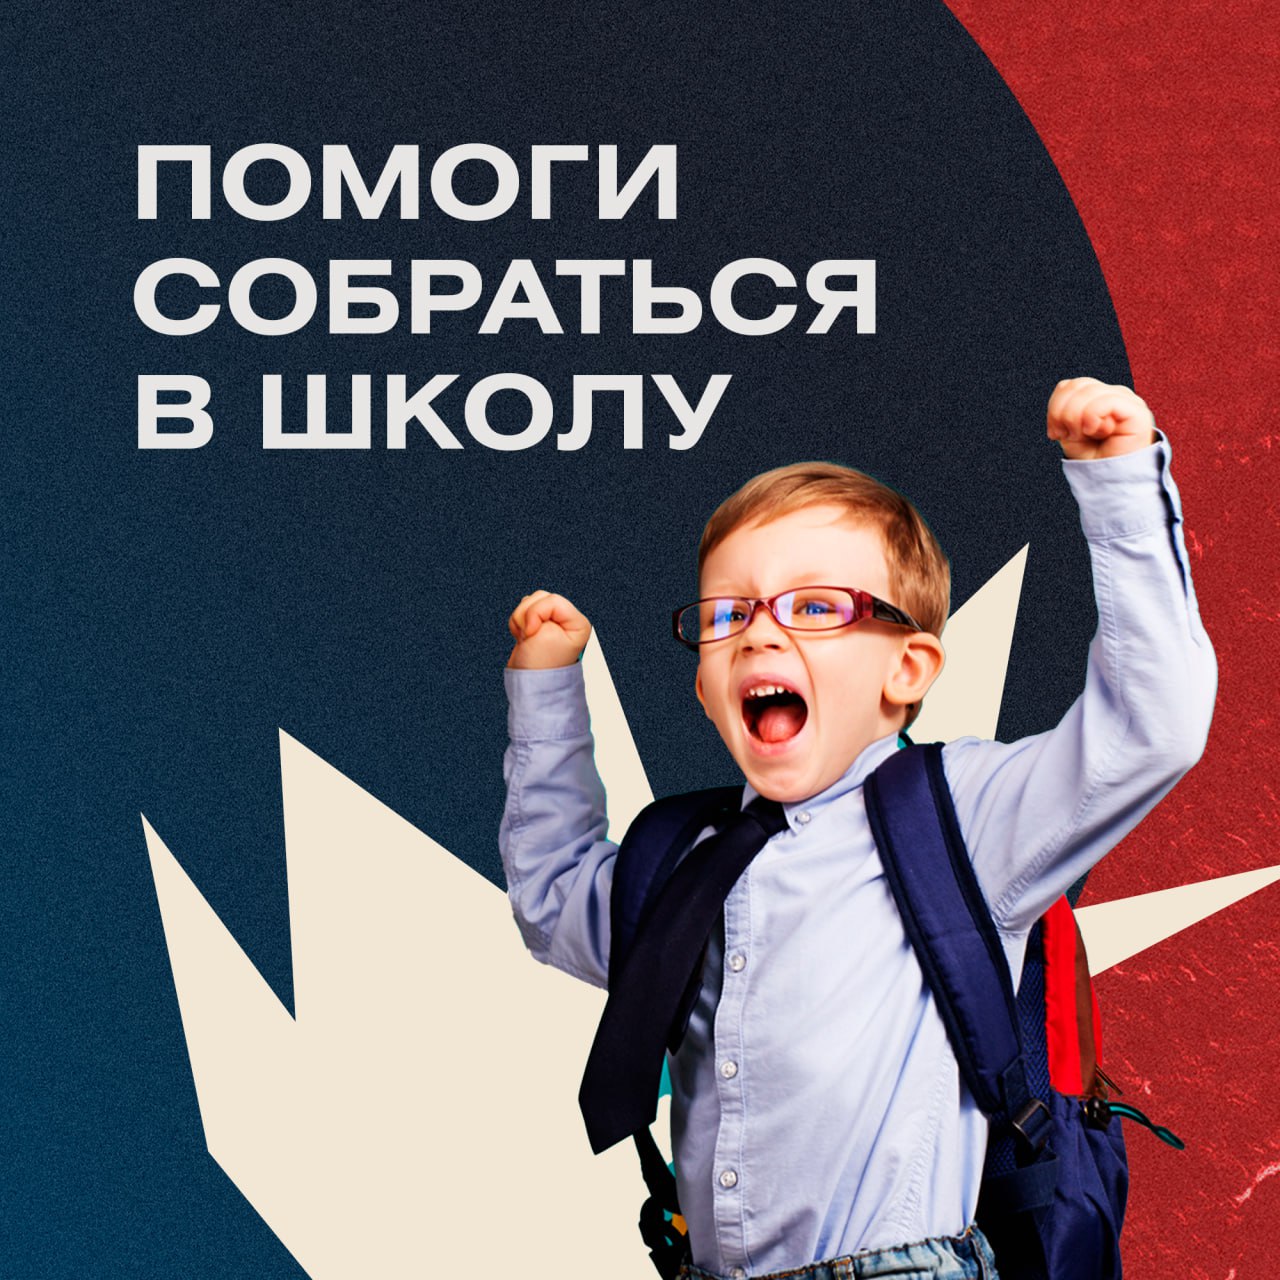  изображение для новости В УлГУ стартовала акция «Помоги собраться в школу»